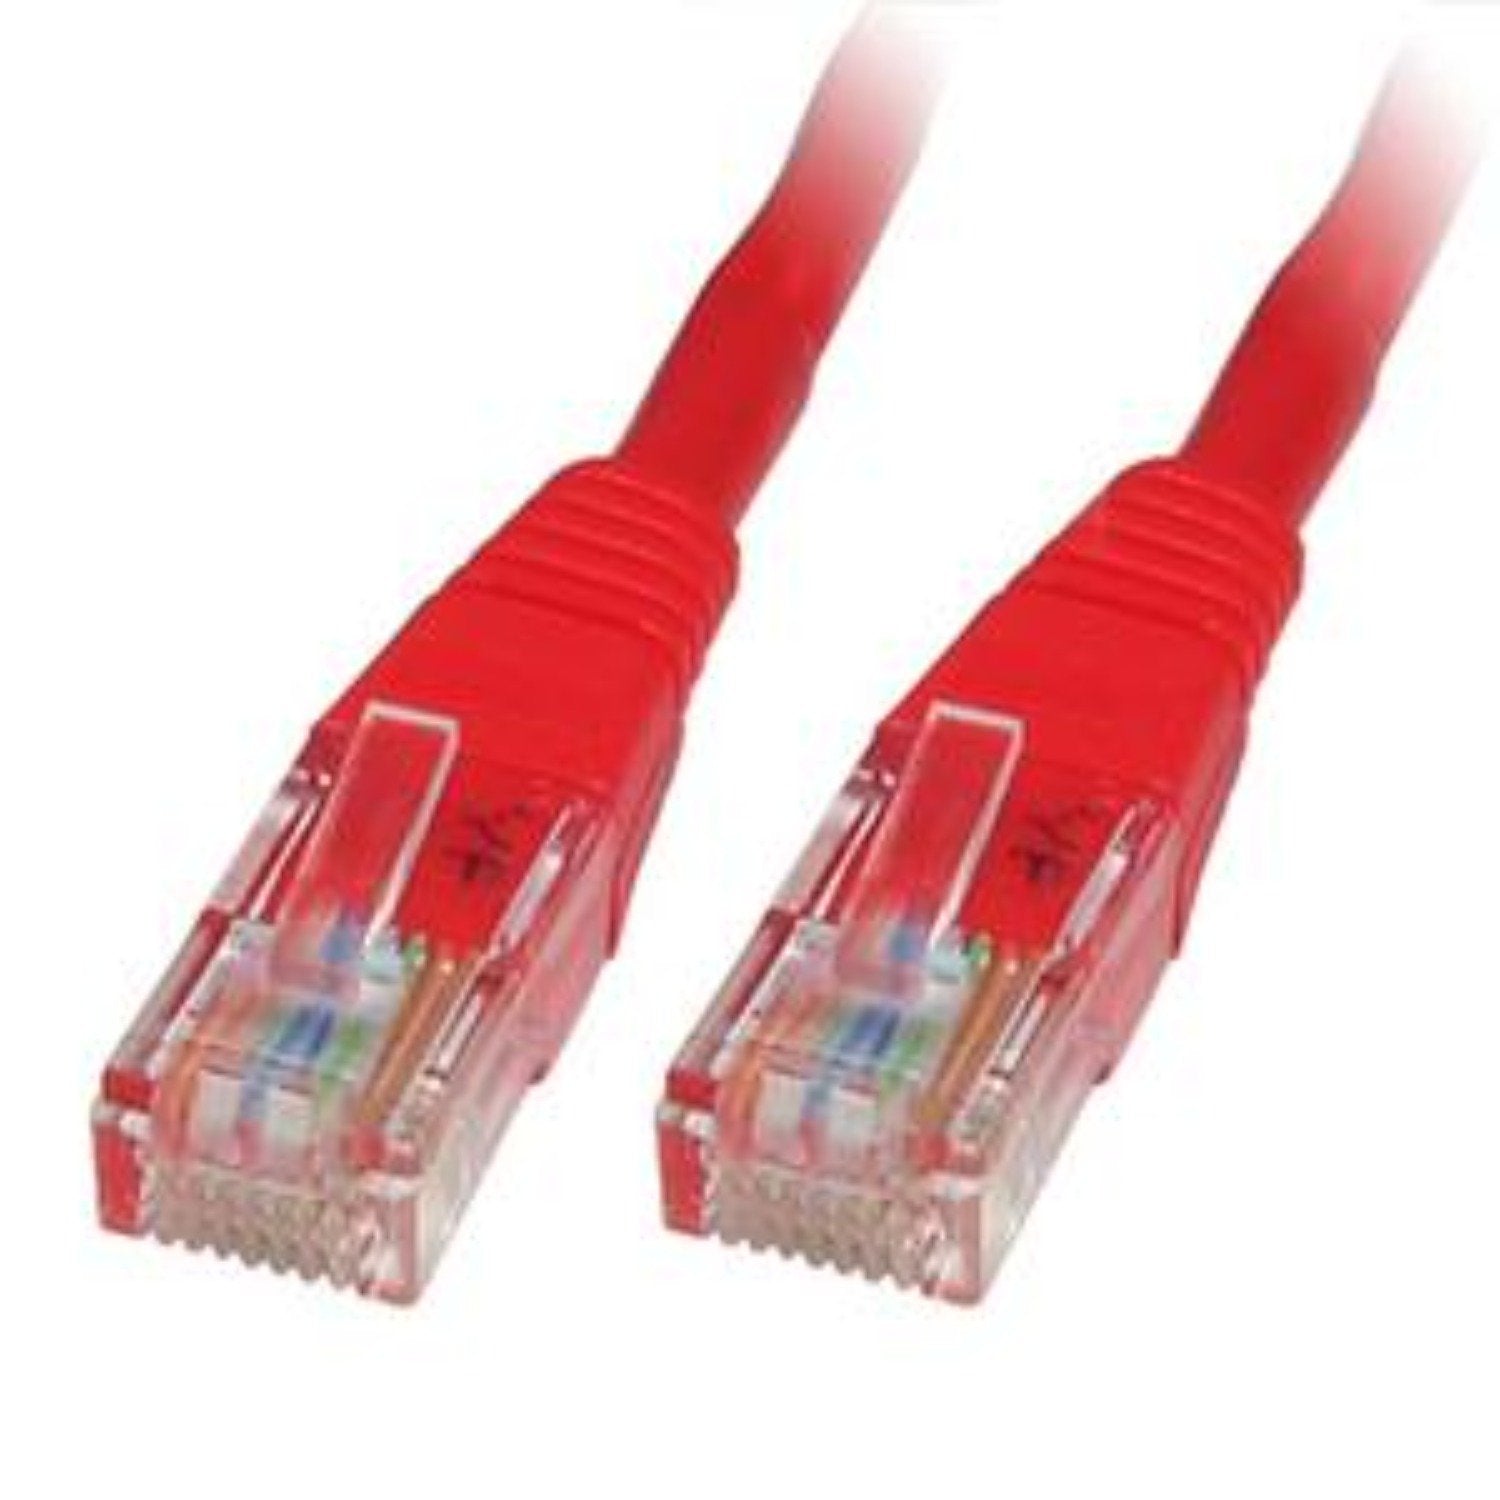 5.0m  LMS Data Ethernet Cat6 RJ45 UTP Patch cable cord, LAN 10/100/1000Mbit/s Cable suitable